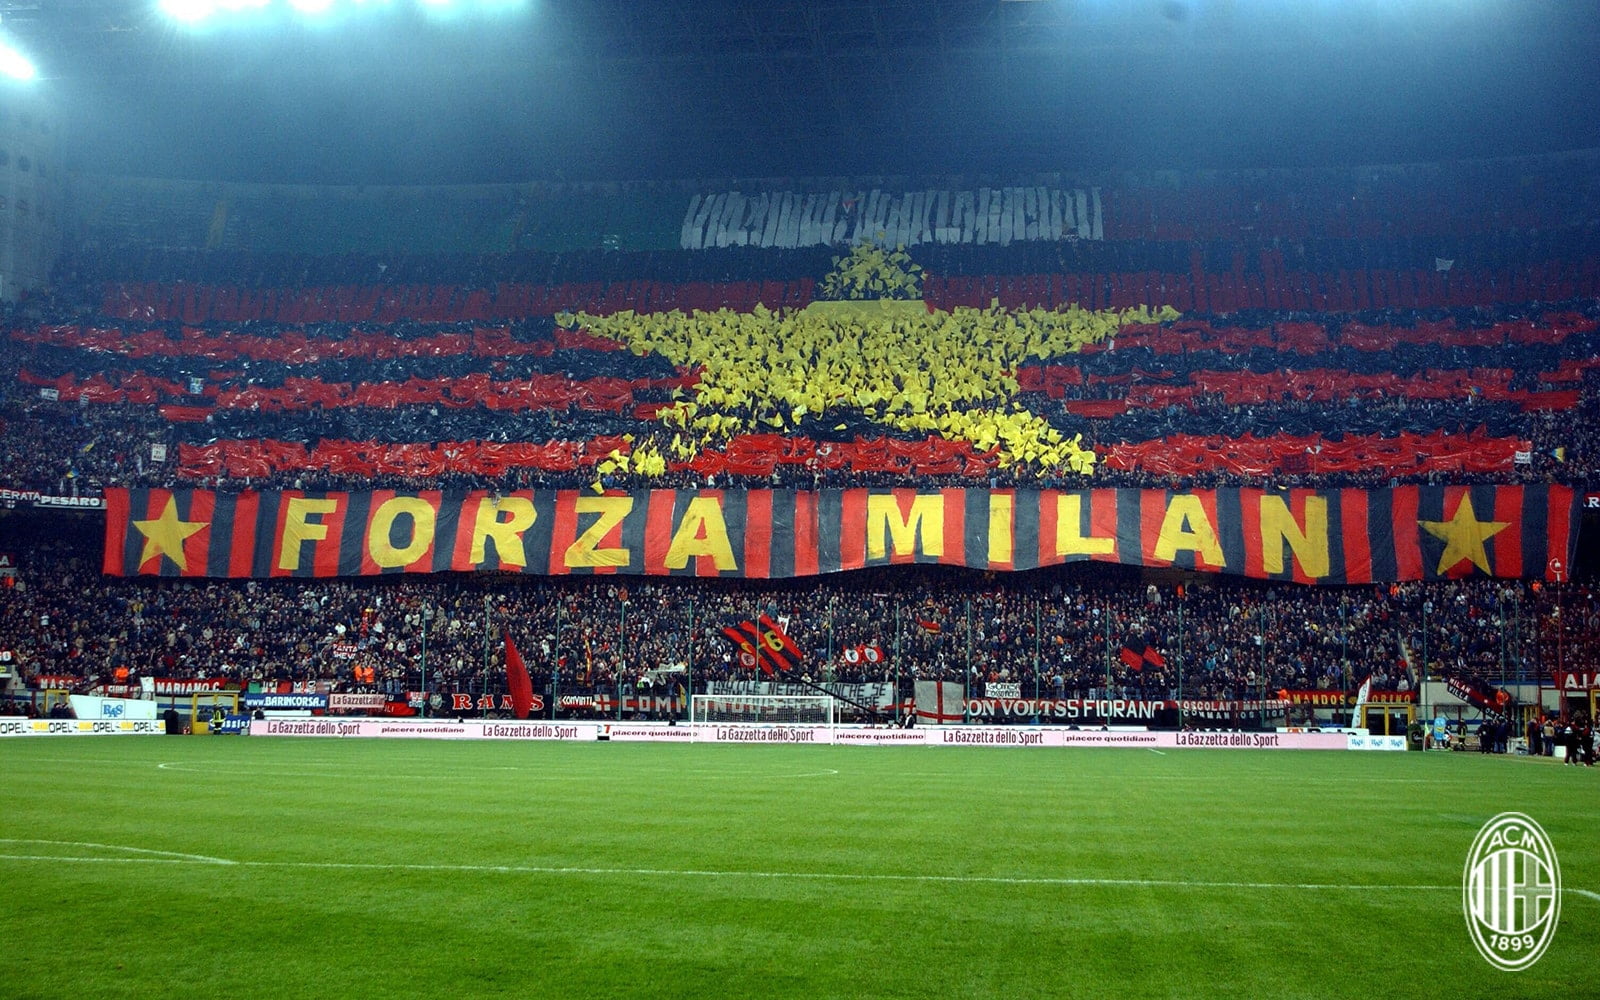 AC Milan - Juventus FC, 7 oktoberom 20:45